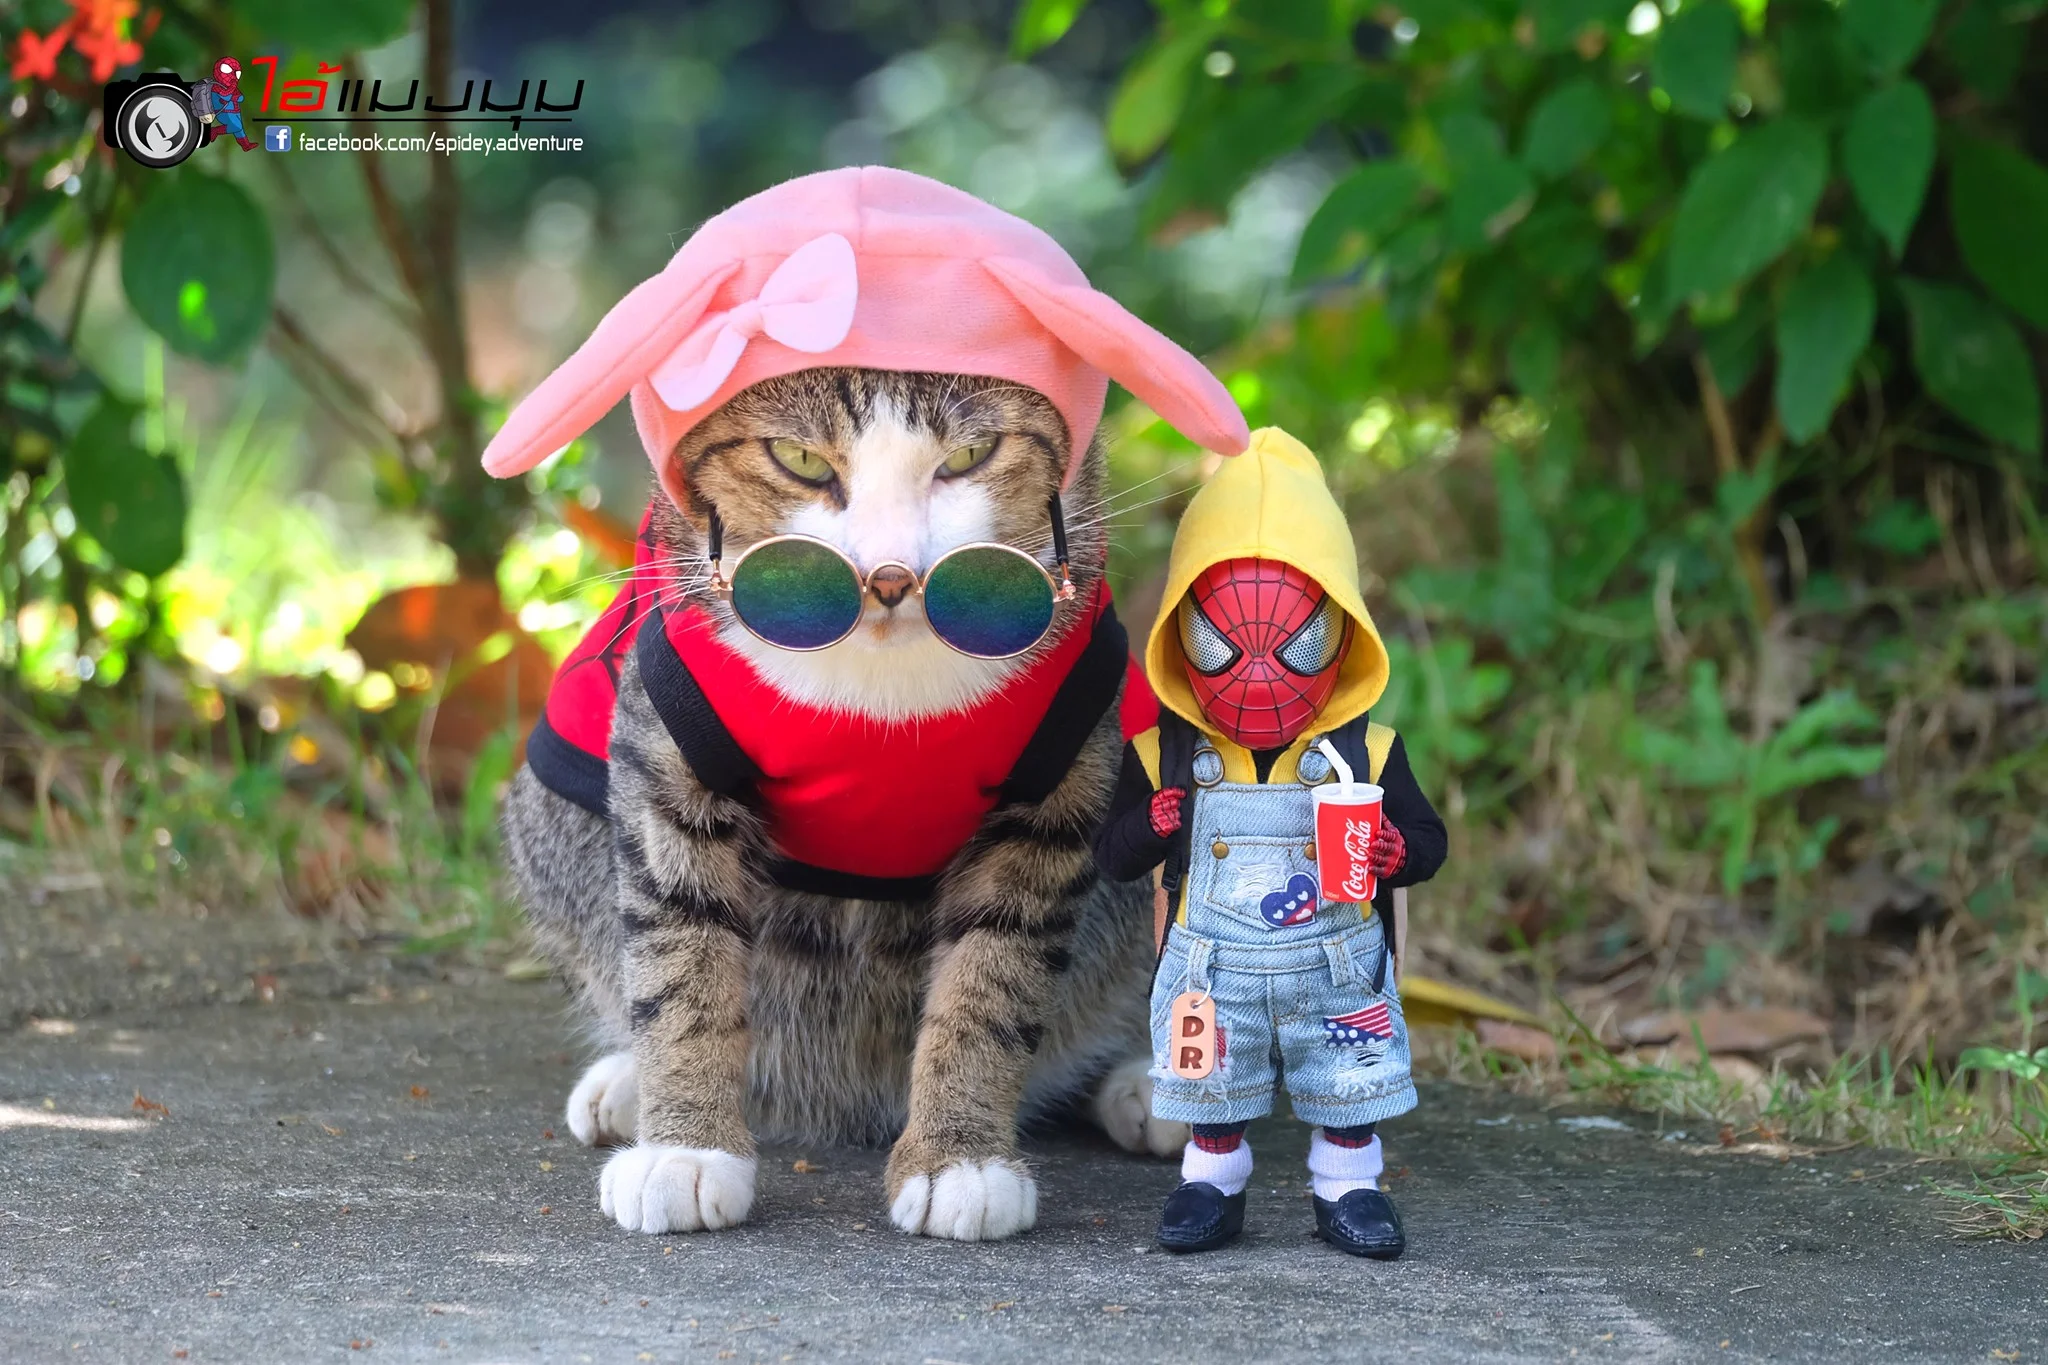 Художник додав до фото з котиками зображення Людини-павука – це виглядає дуже смішно - фото 459370